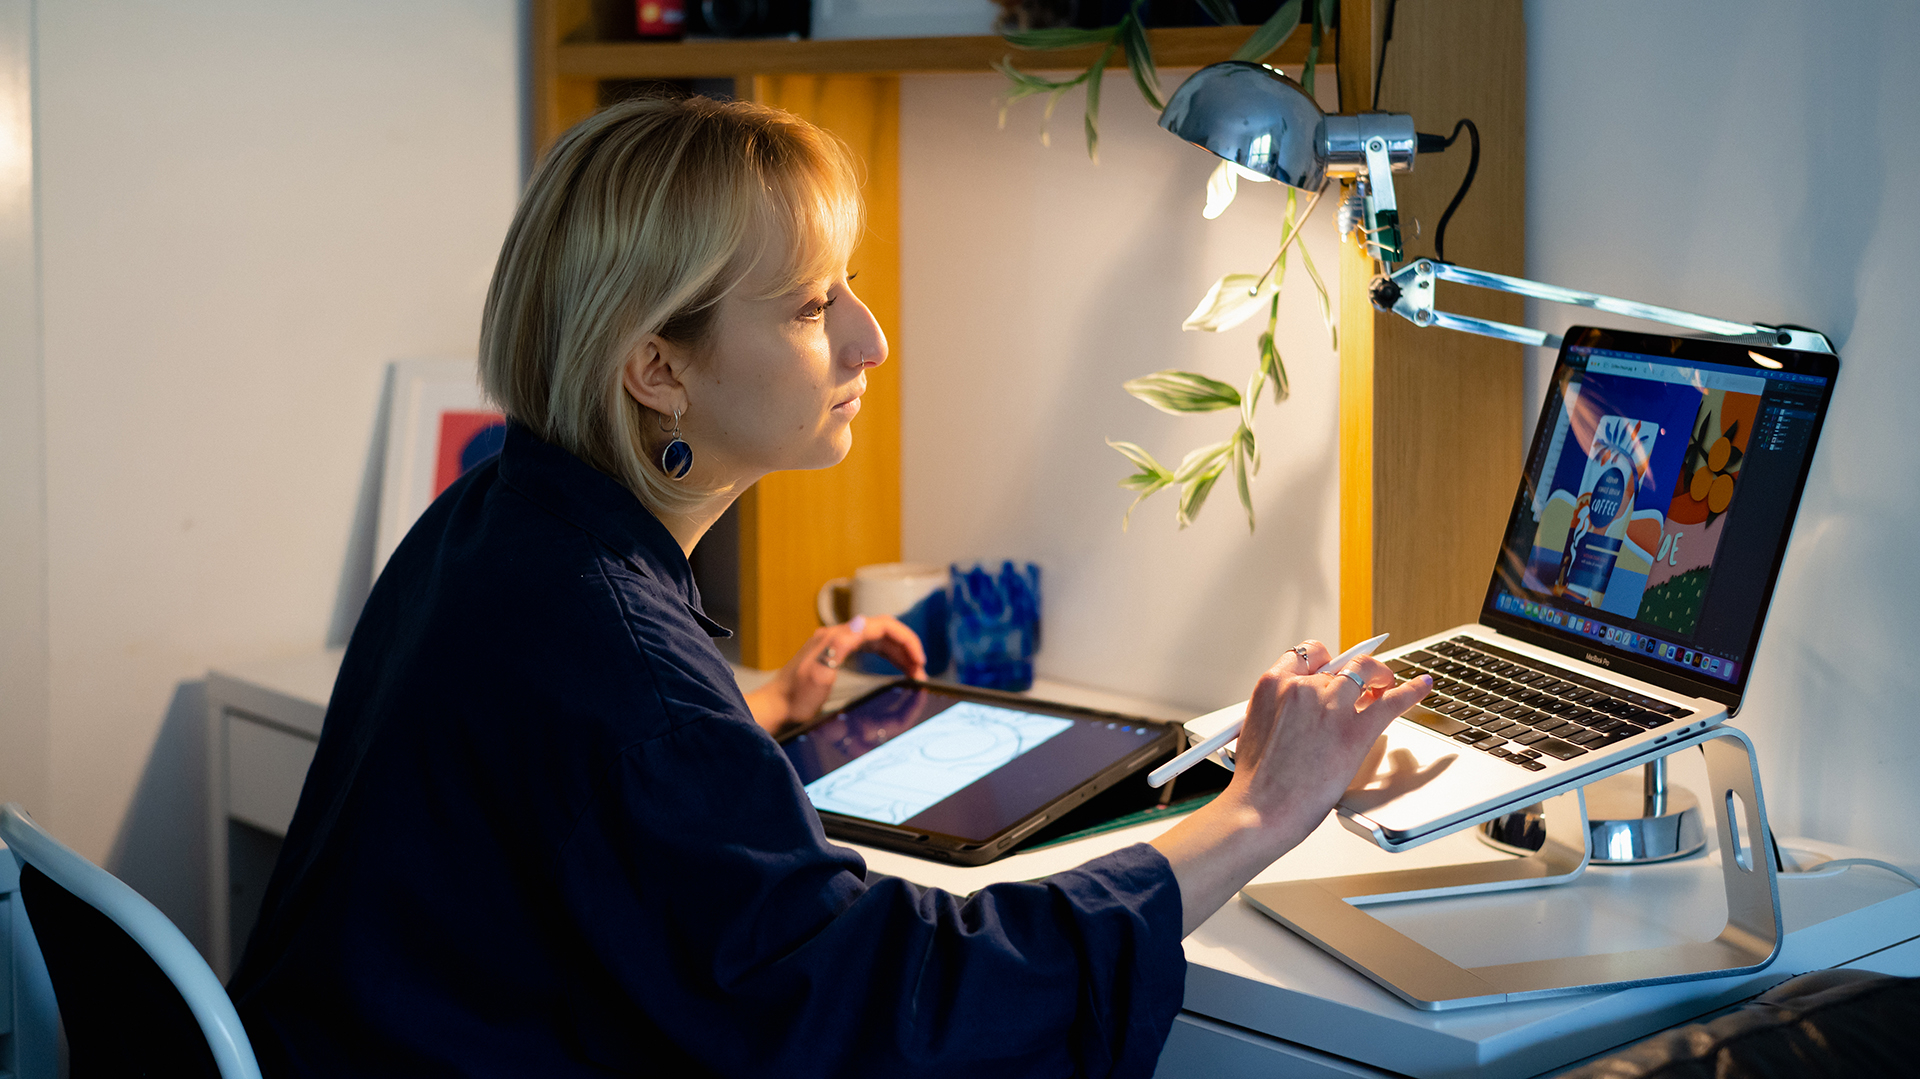 En kvinne sitter ved en kontorpult og skriver på en datamaskin med en skjermpenn i hånden og et nettbrett i bakgrunnen